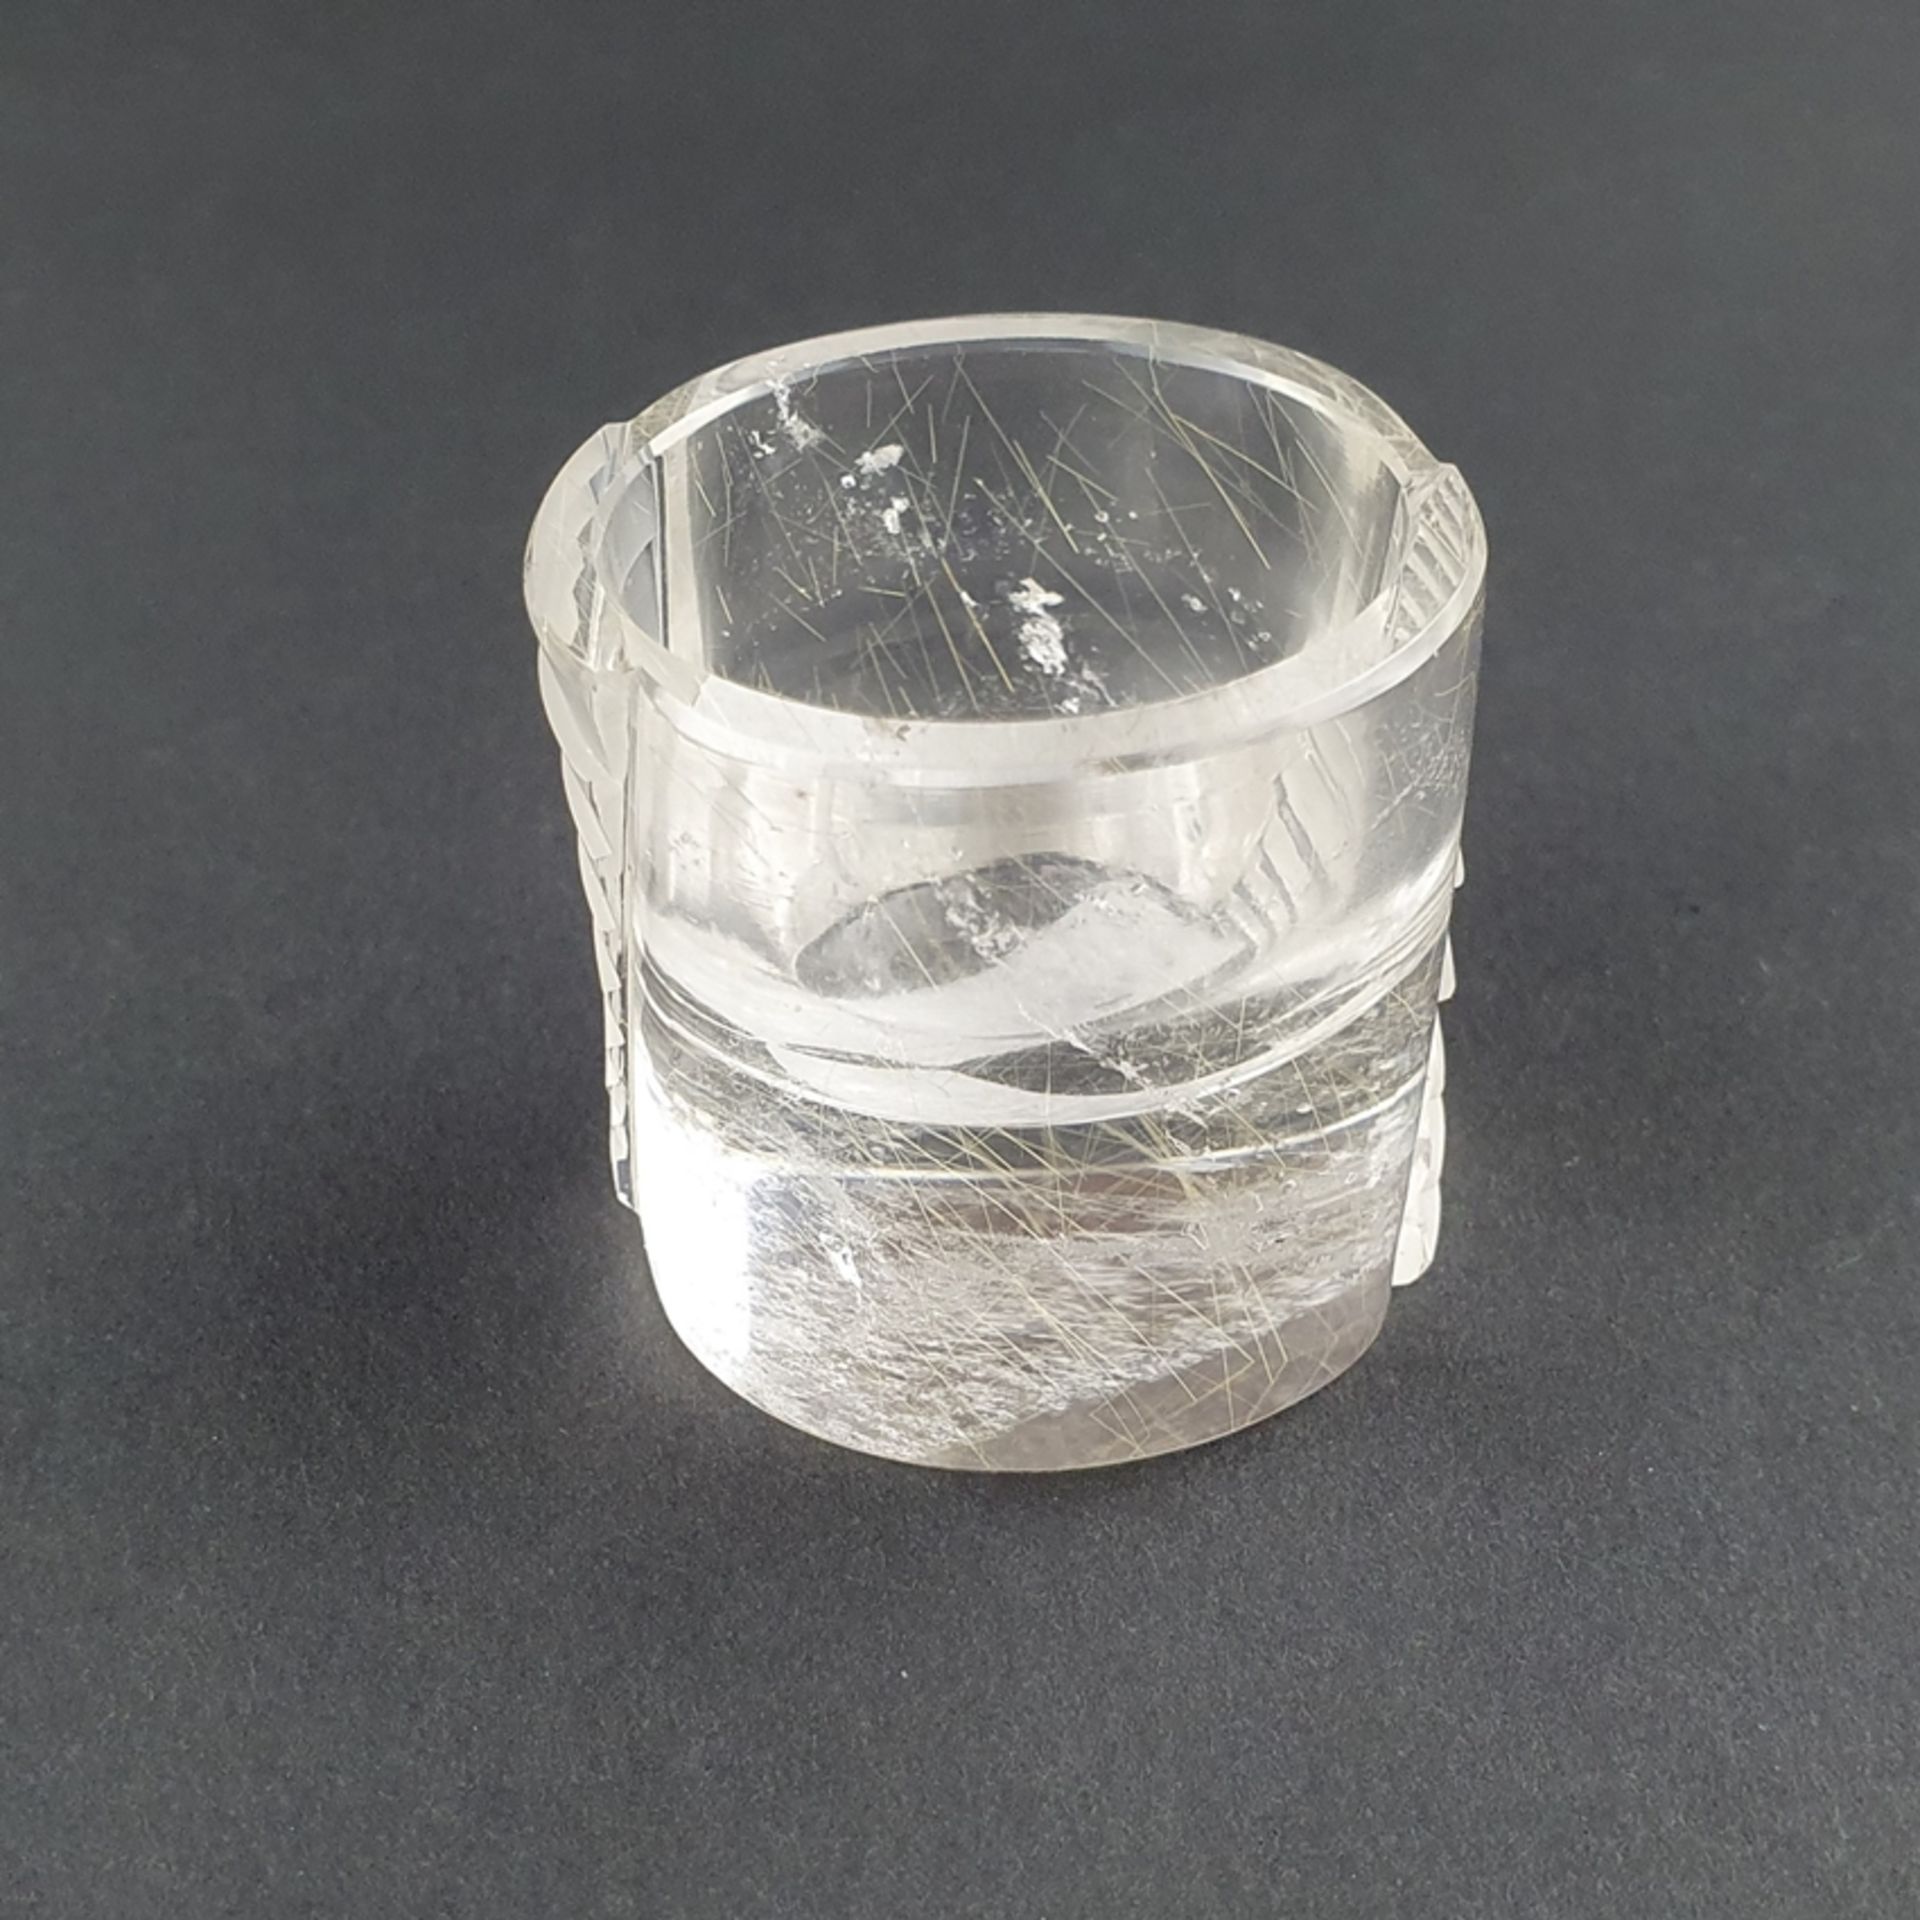 Digestifglas aus Bergkristall - ATELIER MUNSTEINER, Stipshausen (nahe Idar-Oberstein), zylindrische - Bild 2 aus 4